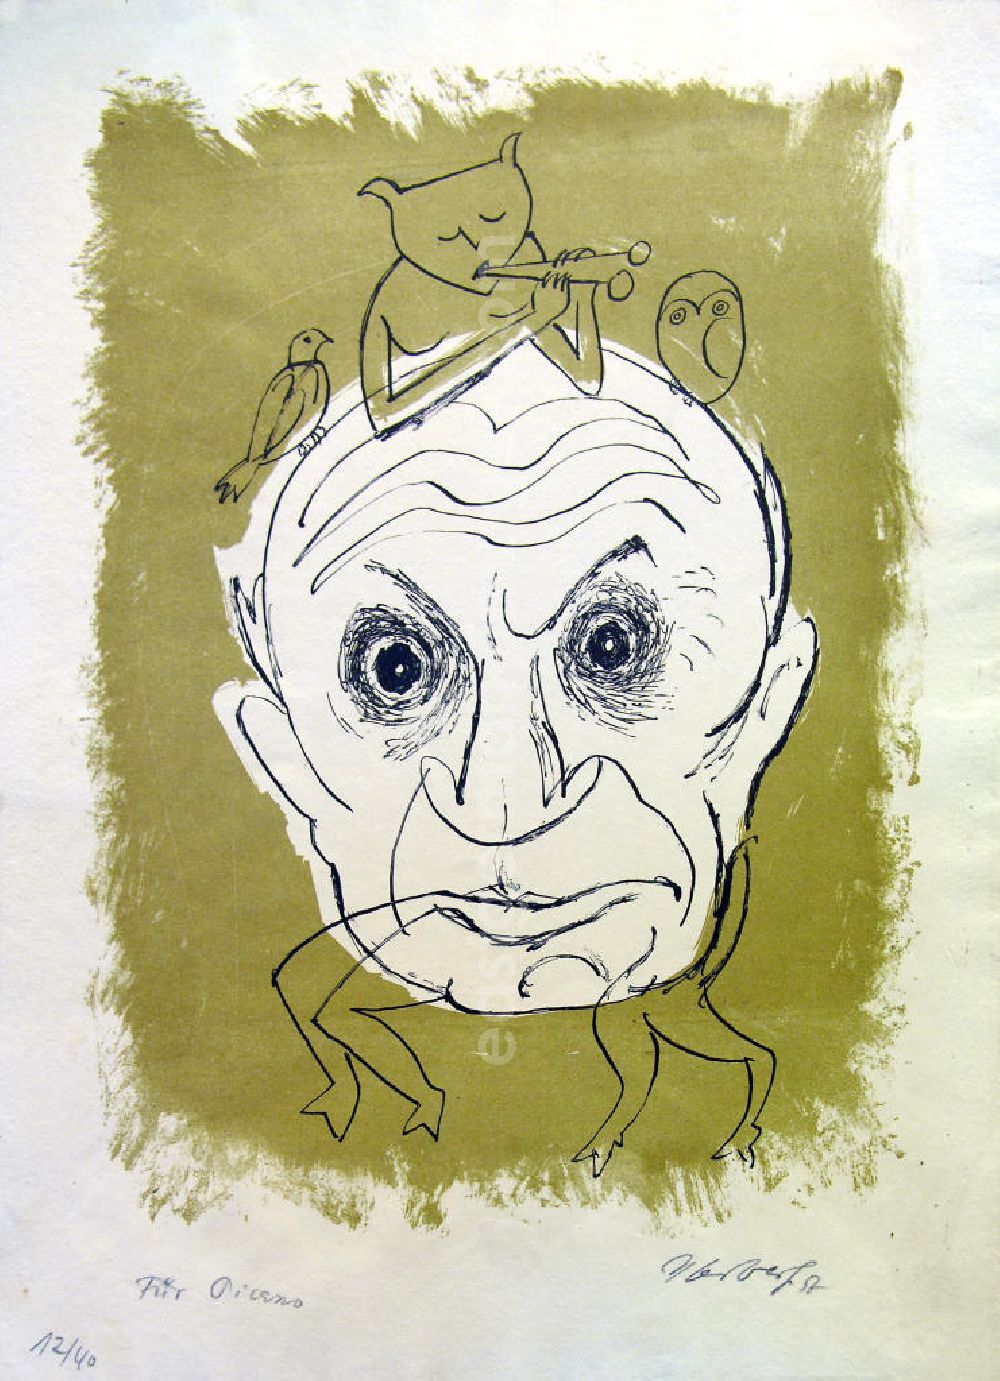 Berlin: Grafik von Herbert Sandberg über Pablo Ruiz Picasso (*25.10.1881 †08.04.1973) Für Picasso aus dem Jahr 1957,25,4x34,5cm Farblithographie, handsigniert, 12/4